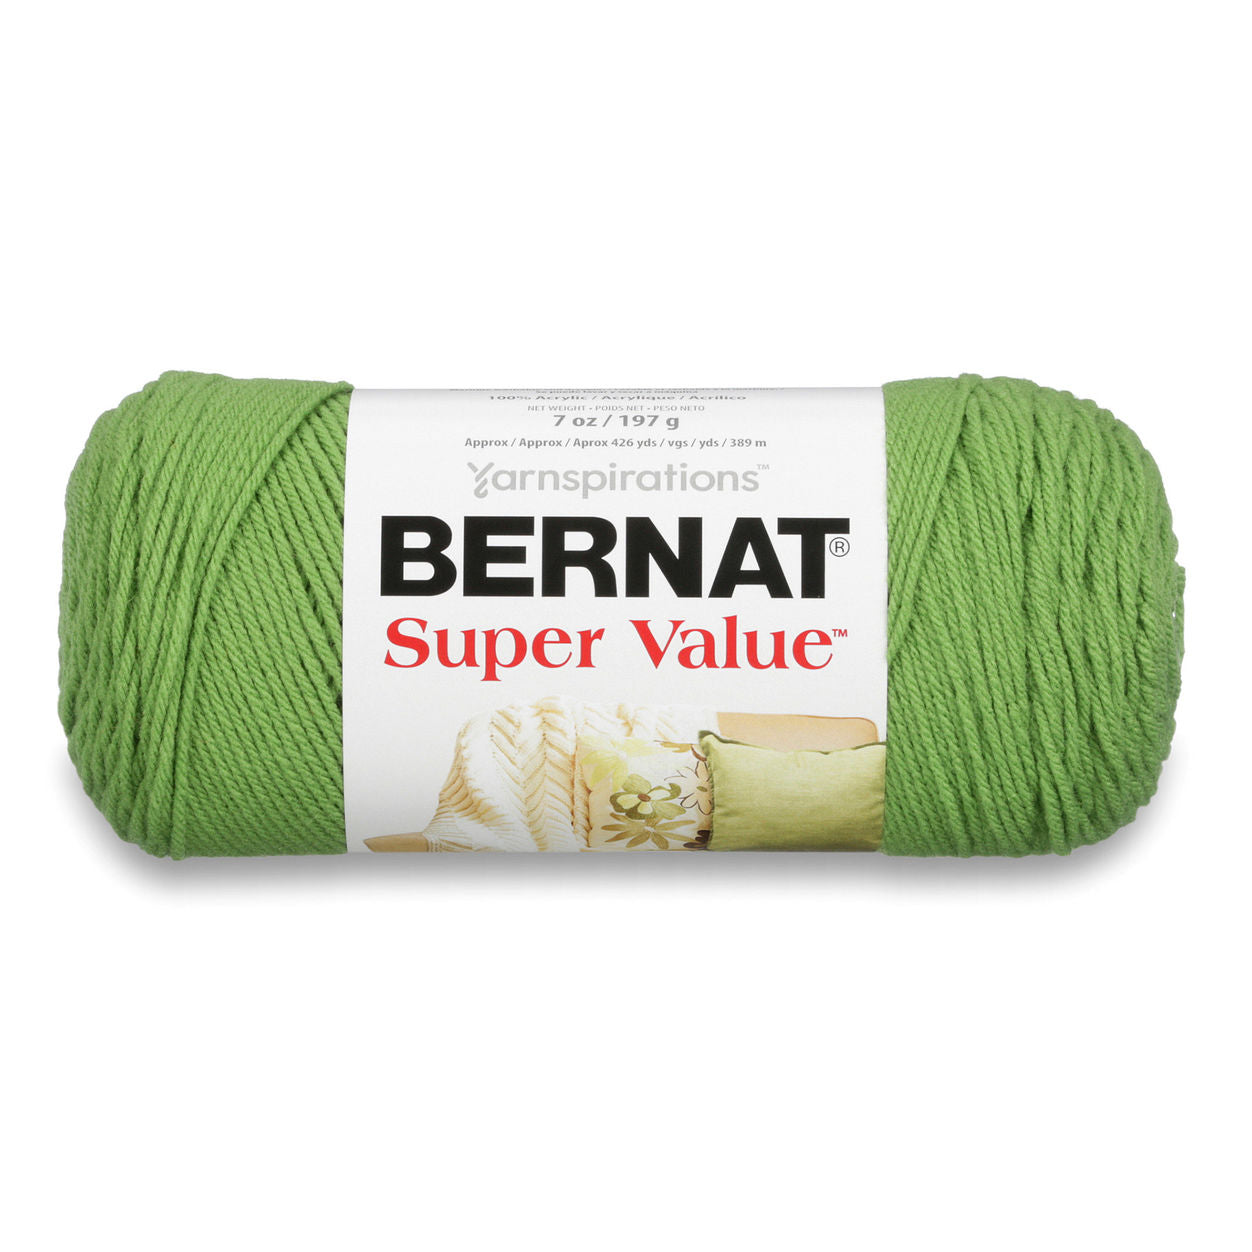 1 Skein 2 Skeins Available 2 Dye Lots Bernat Super Value 